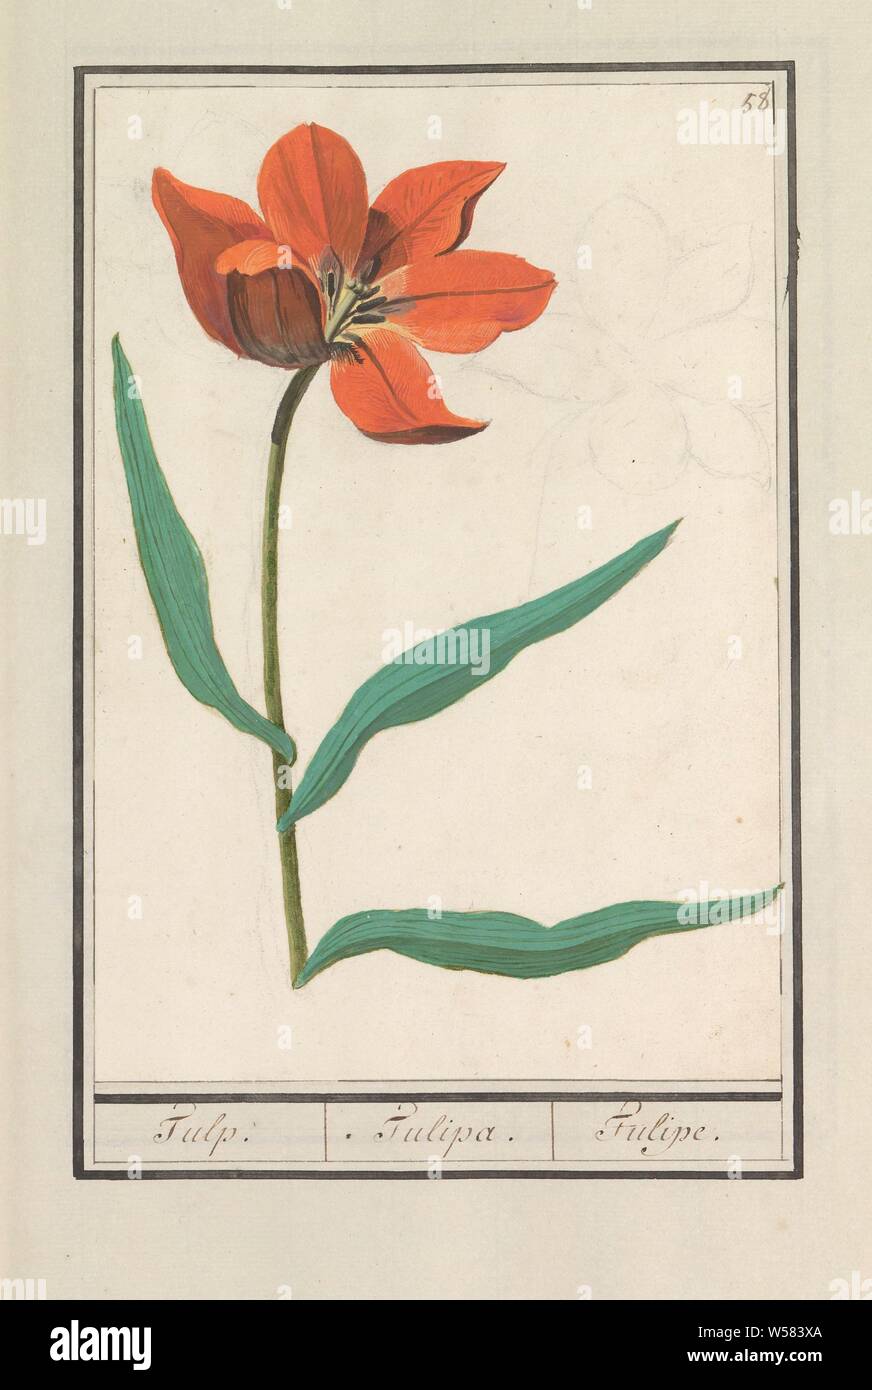 Tulip (Tulipa), Tulp. / Tulipa. / Tulipe. (Titolo in oggetto), Orange Tulip. Numerate in alto a destra: 58. Parte del primo album con disegni di fiori e piante. Ottavo di dodici album con disegni di animali, uccelli e piante conosciute intorno al 1600, commissionato dall'imperatore Rudolf II. Con spiegazioni in olandese, il latino e il francese, fiori: tulip, Anselmus Boetius De Boodt, 1596 - 1610, carta Acquerello (vernice), deck vernice, gesso, spazzola, h 260 mm × W 179 mm Foto Stock